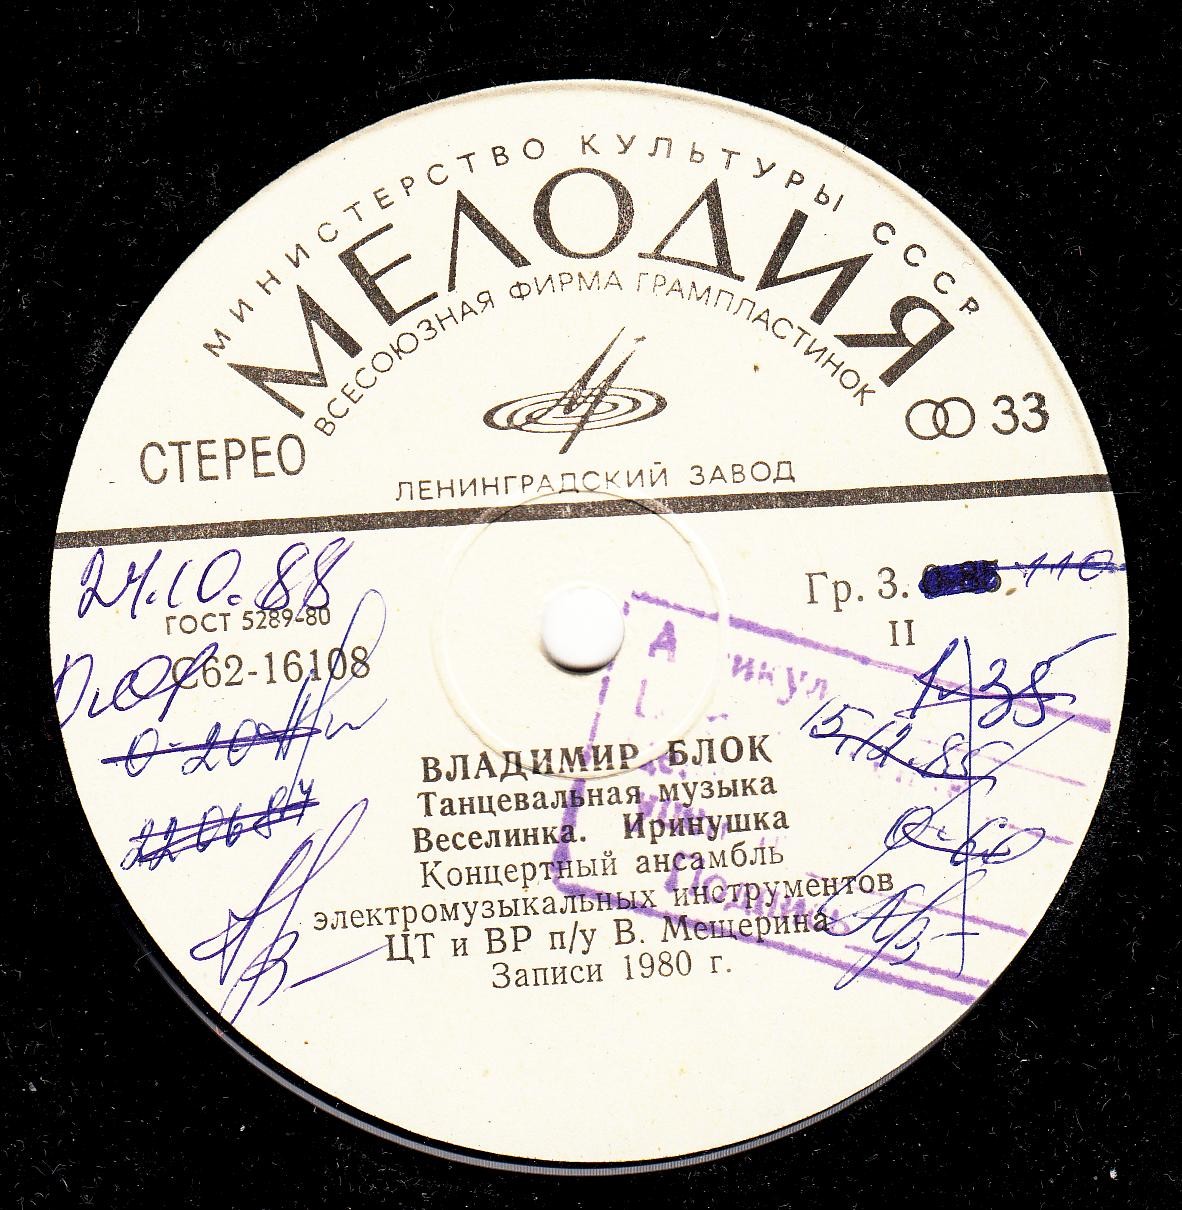 ТАНЦЕВАЛЬНАЯ МУЗЫКА В. БЛОКА (1932).